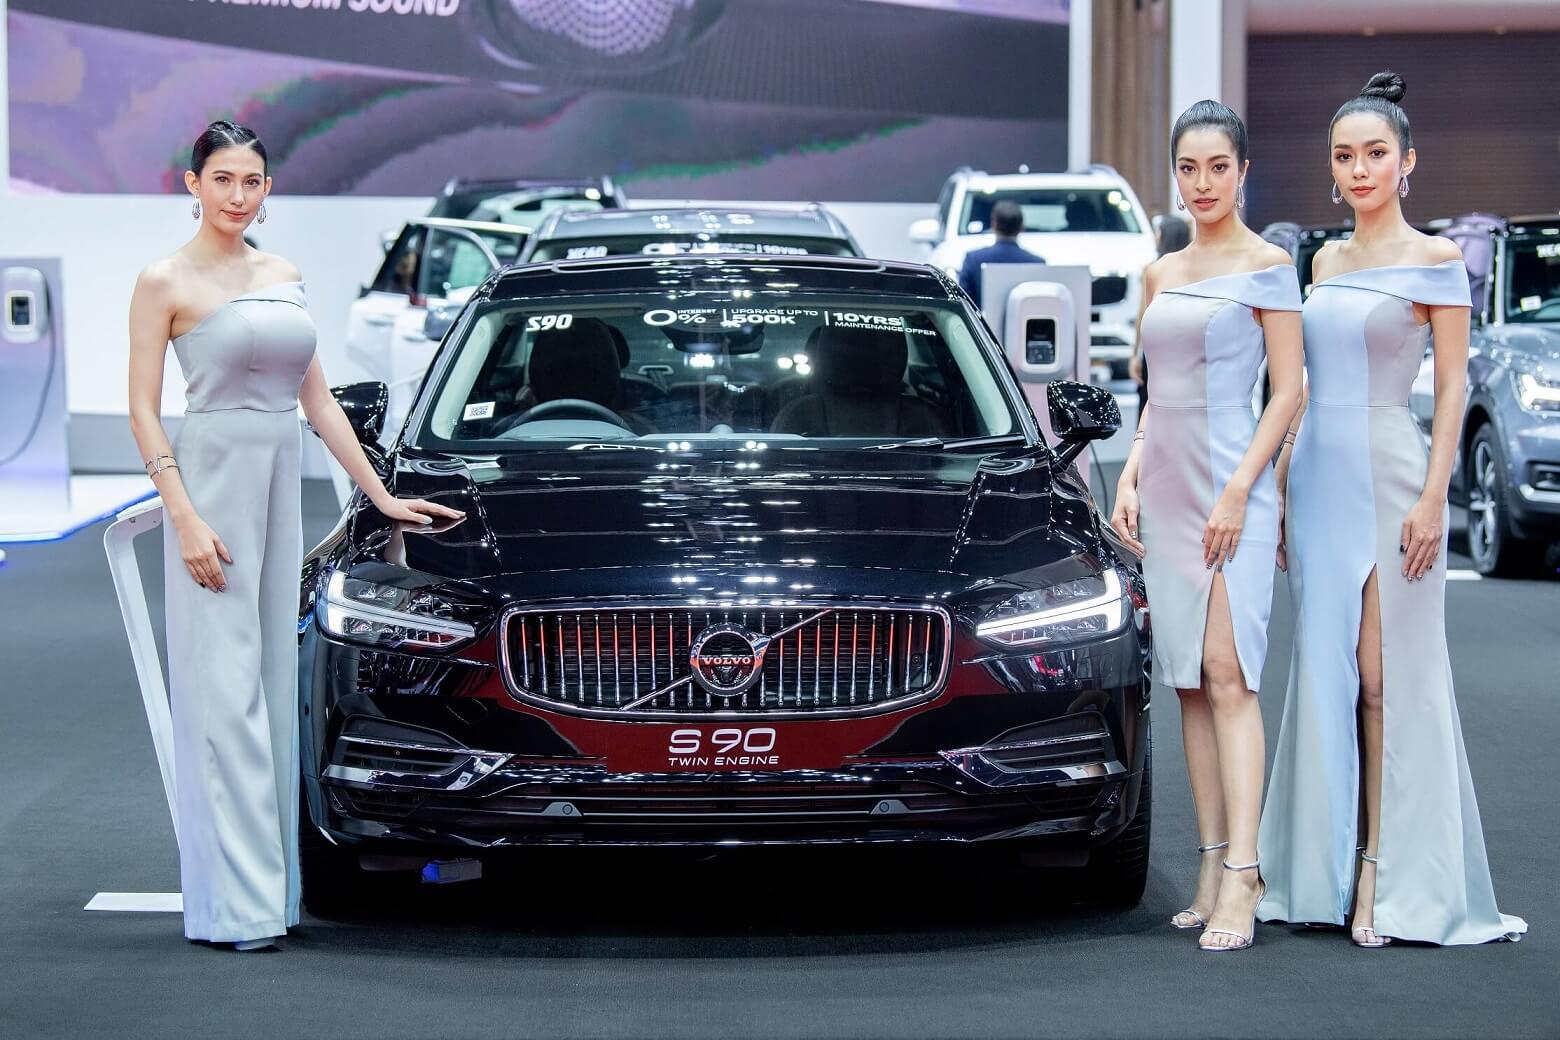 Volvo Thailand Motor Show 2019